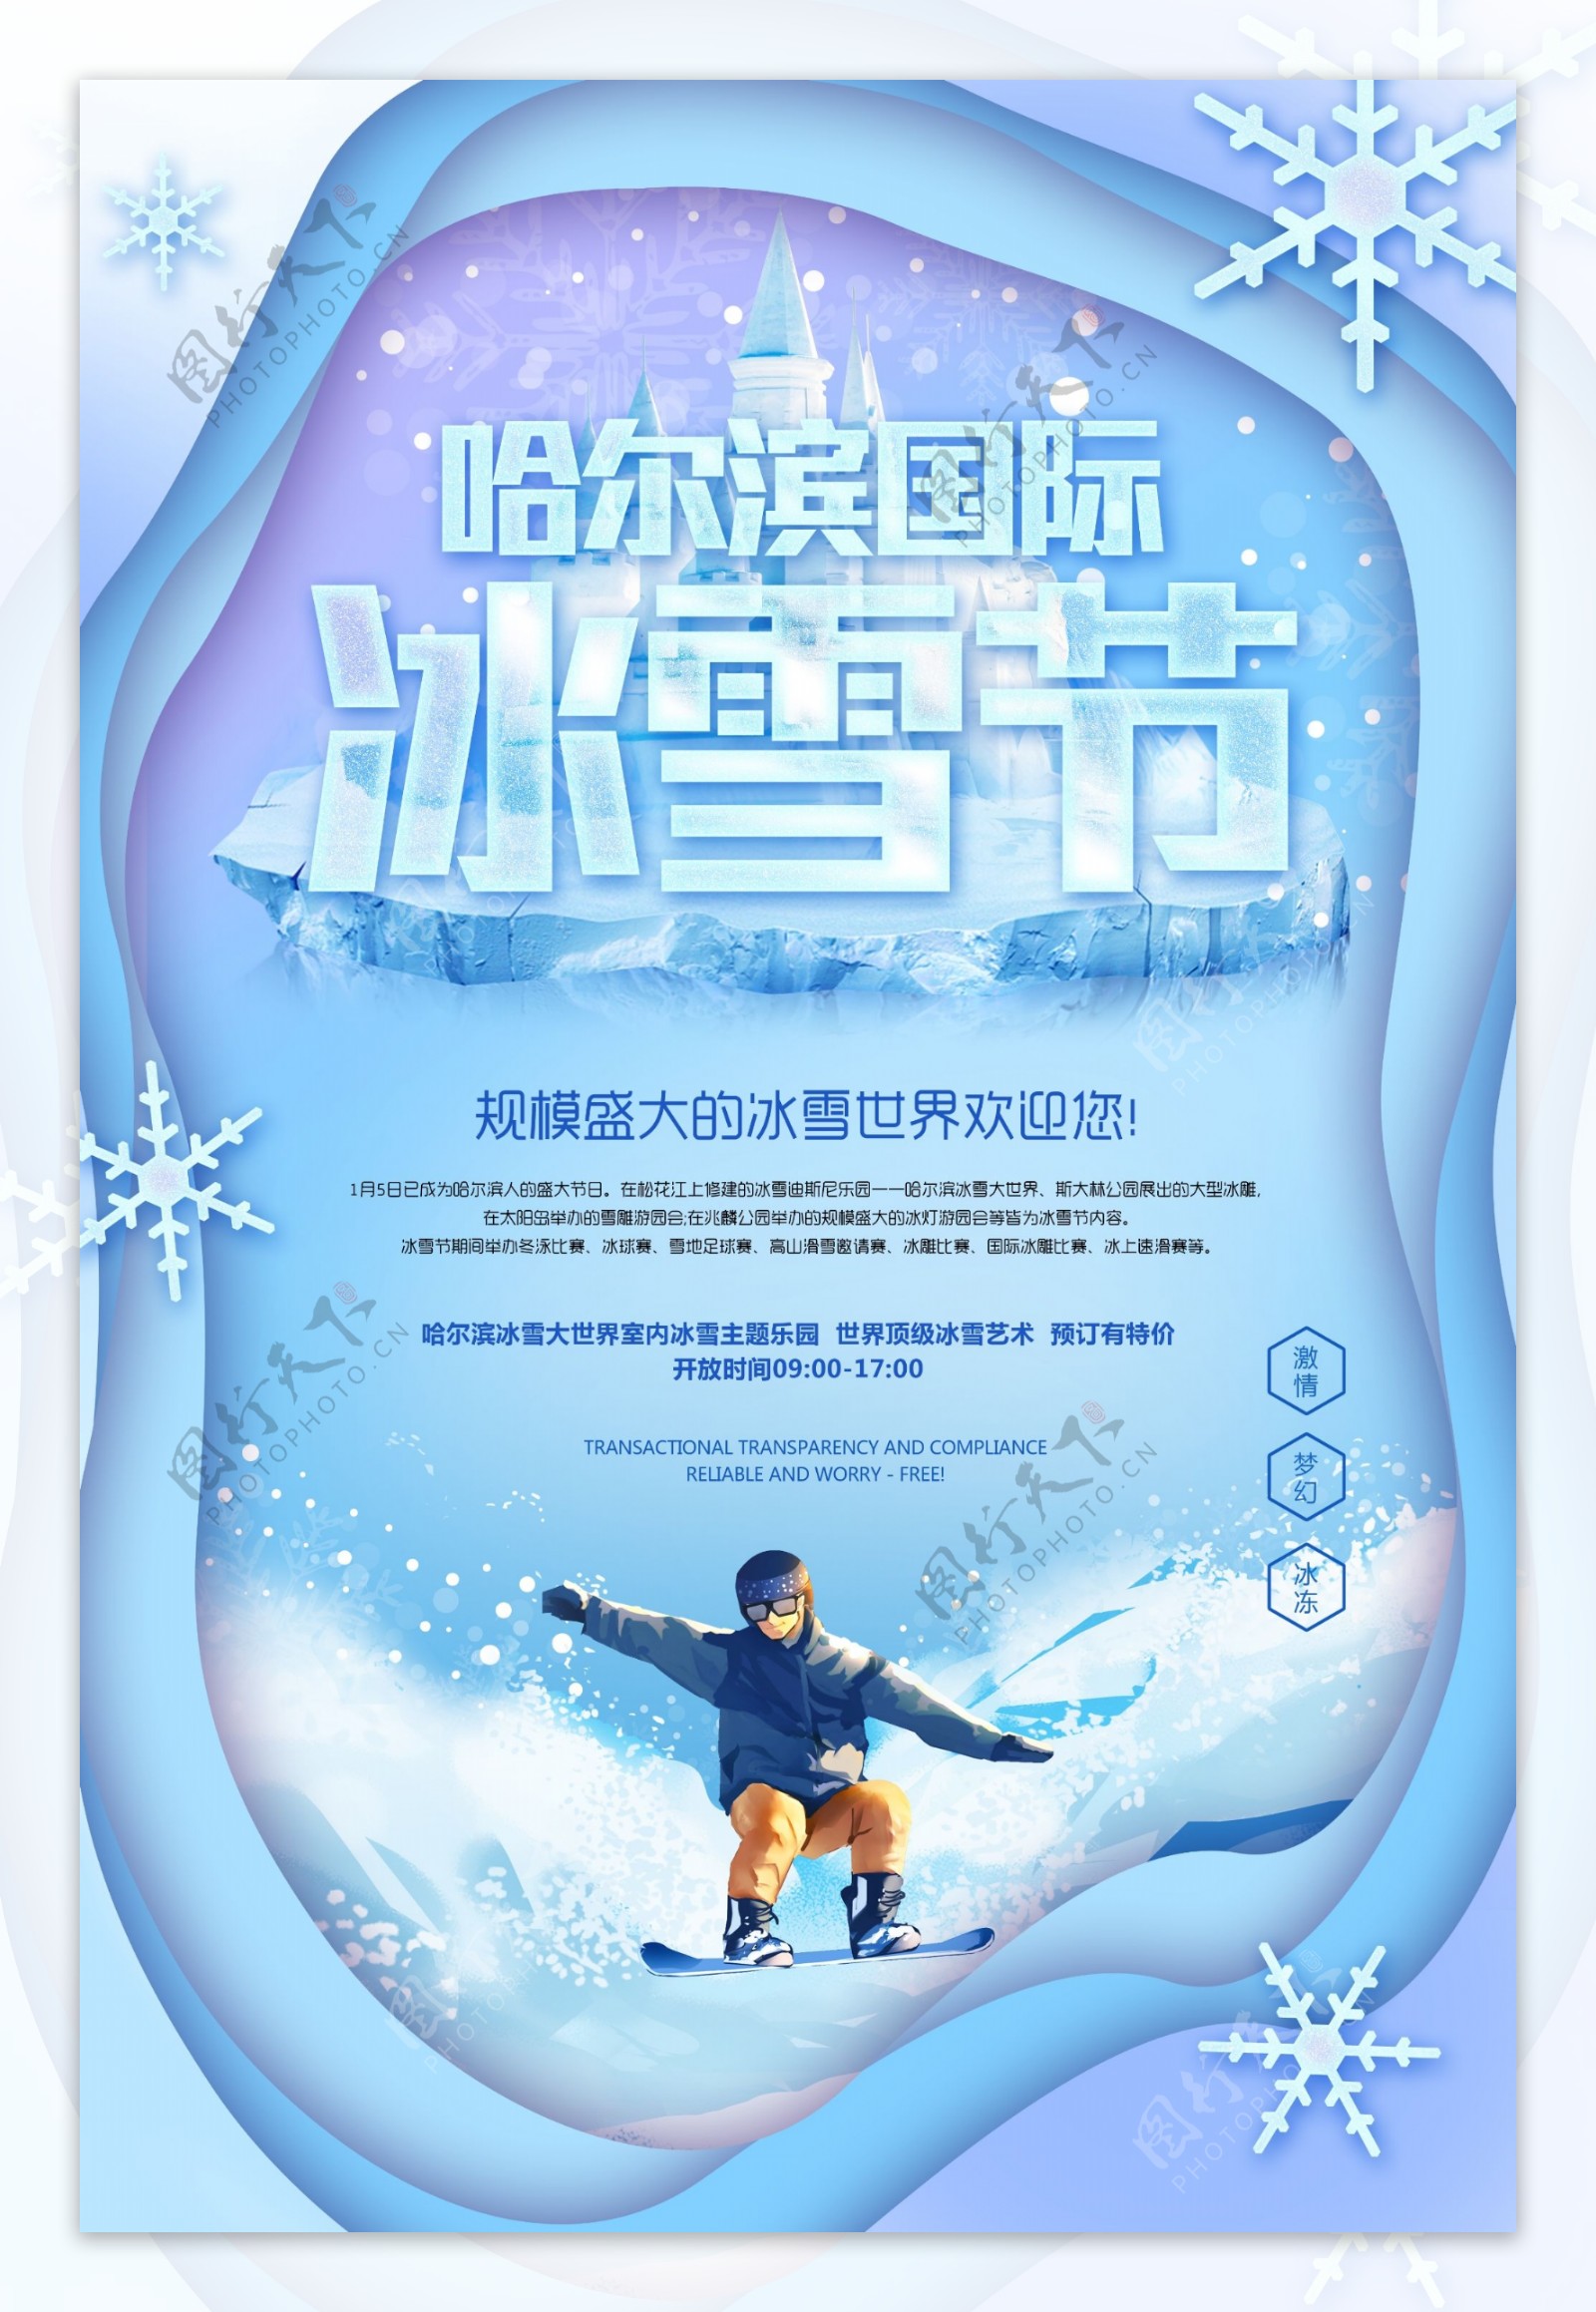 剪纸风哈尔滨国际冰雪节海报